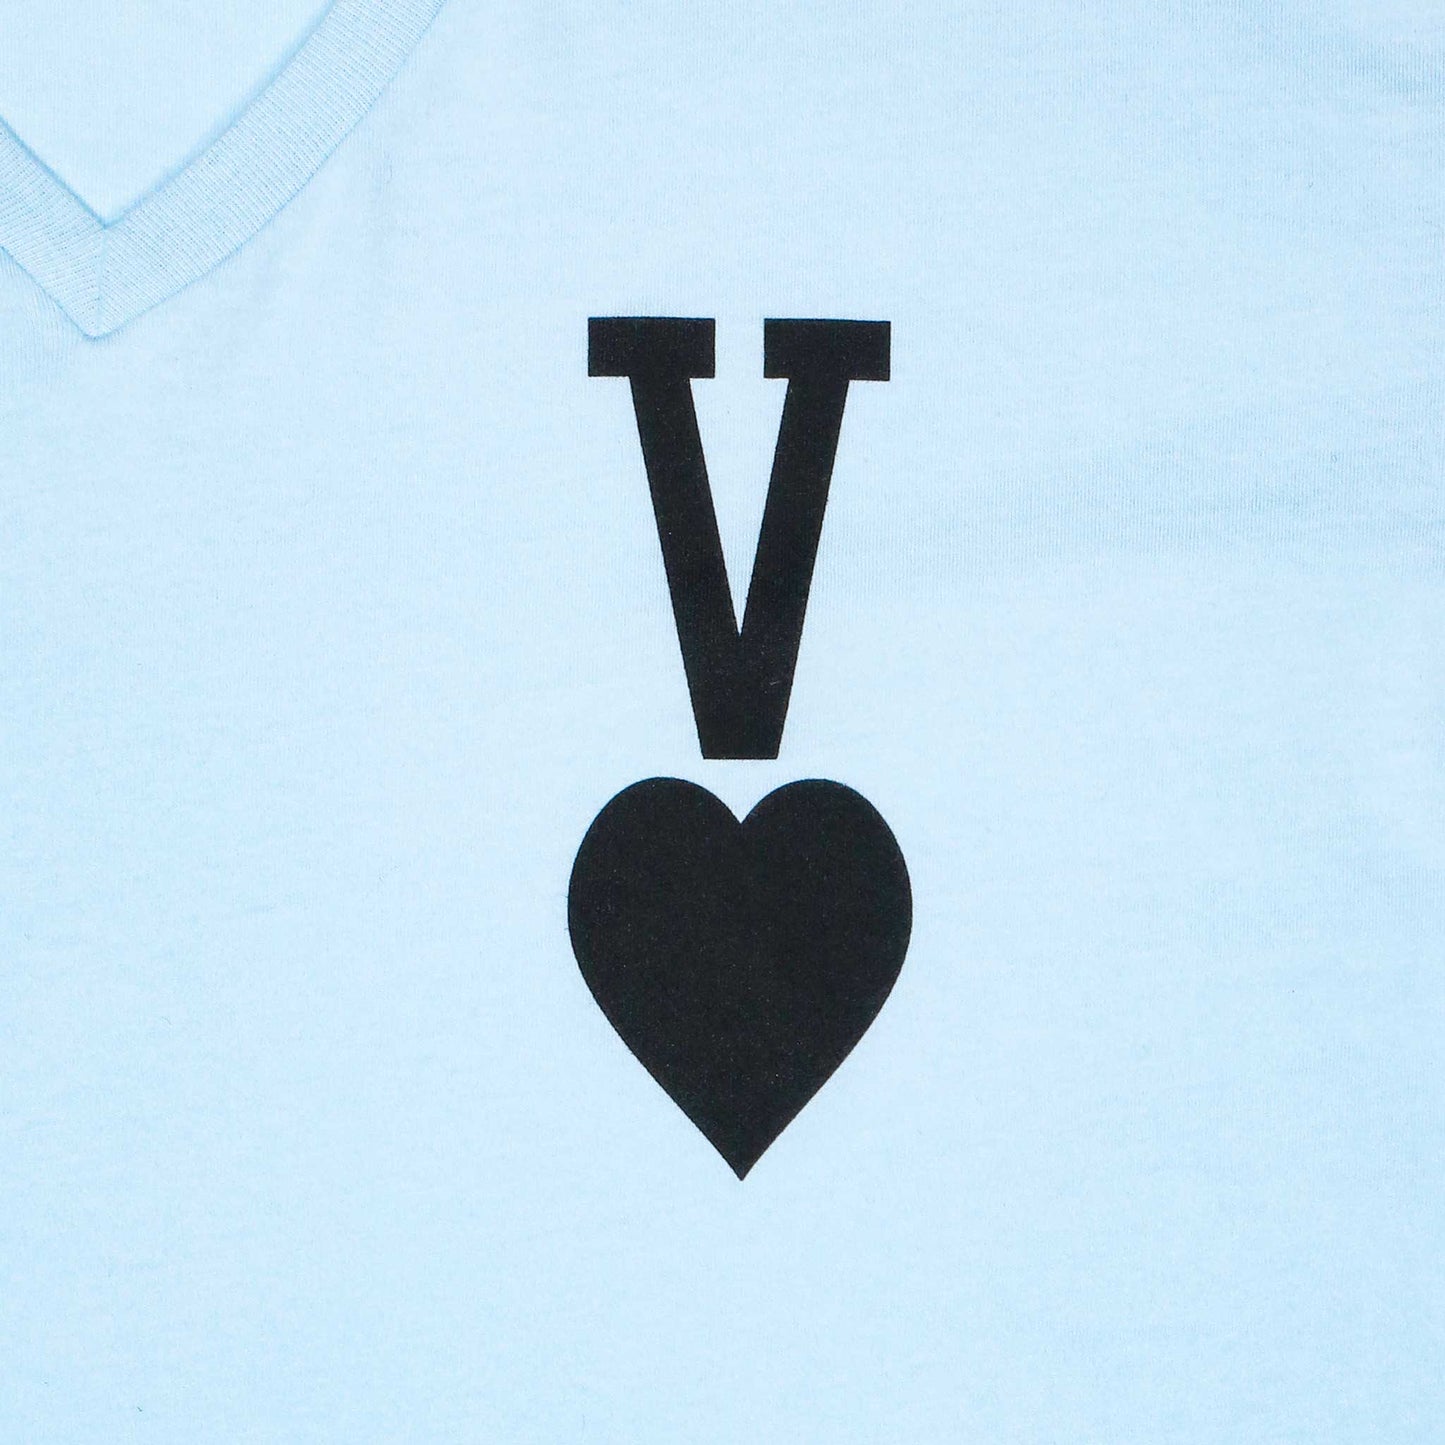 Men's - Vaughn Card Light Blue V-Neck T-Shirt-Vaughn de Heart